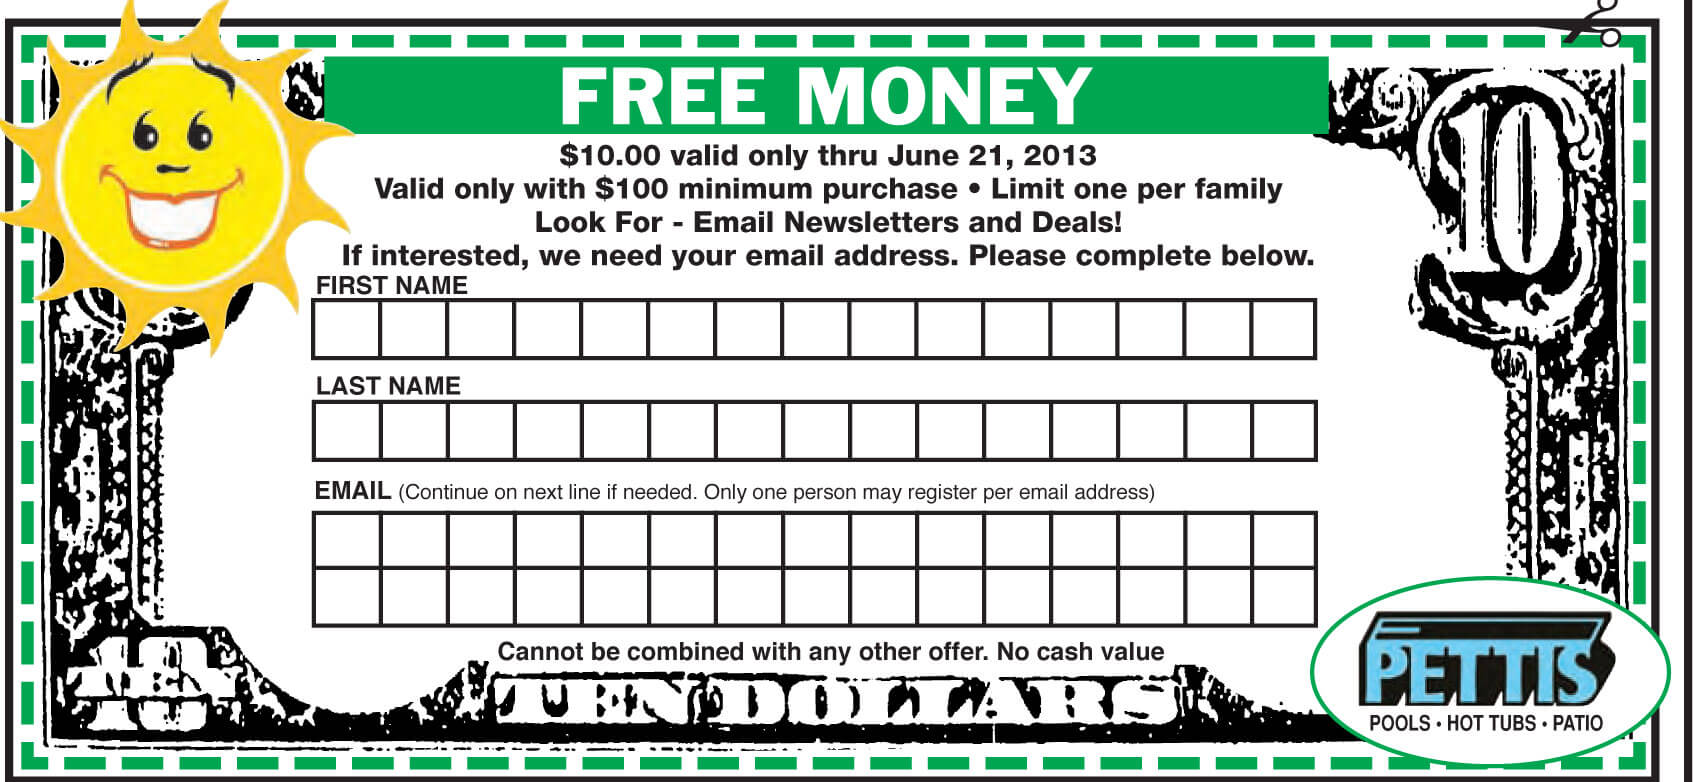 Pettis $10 Free Money Coupon 2013